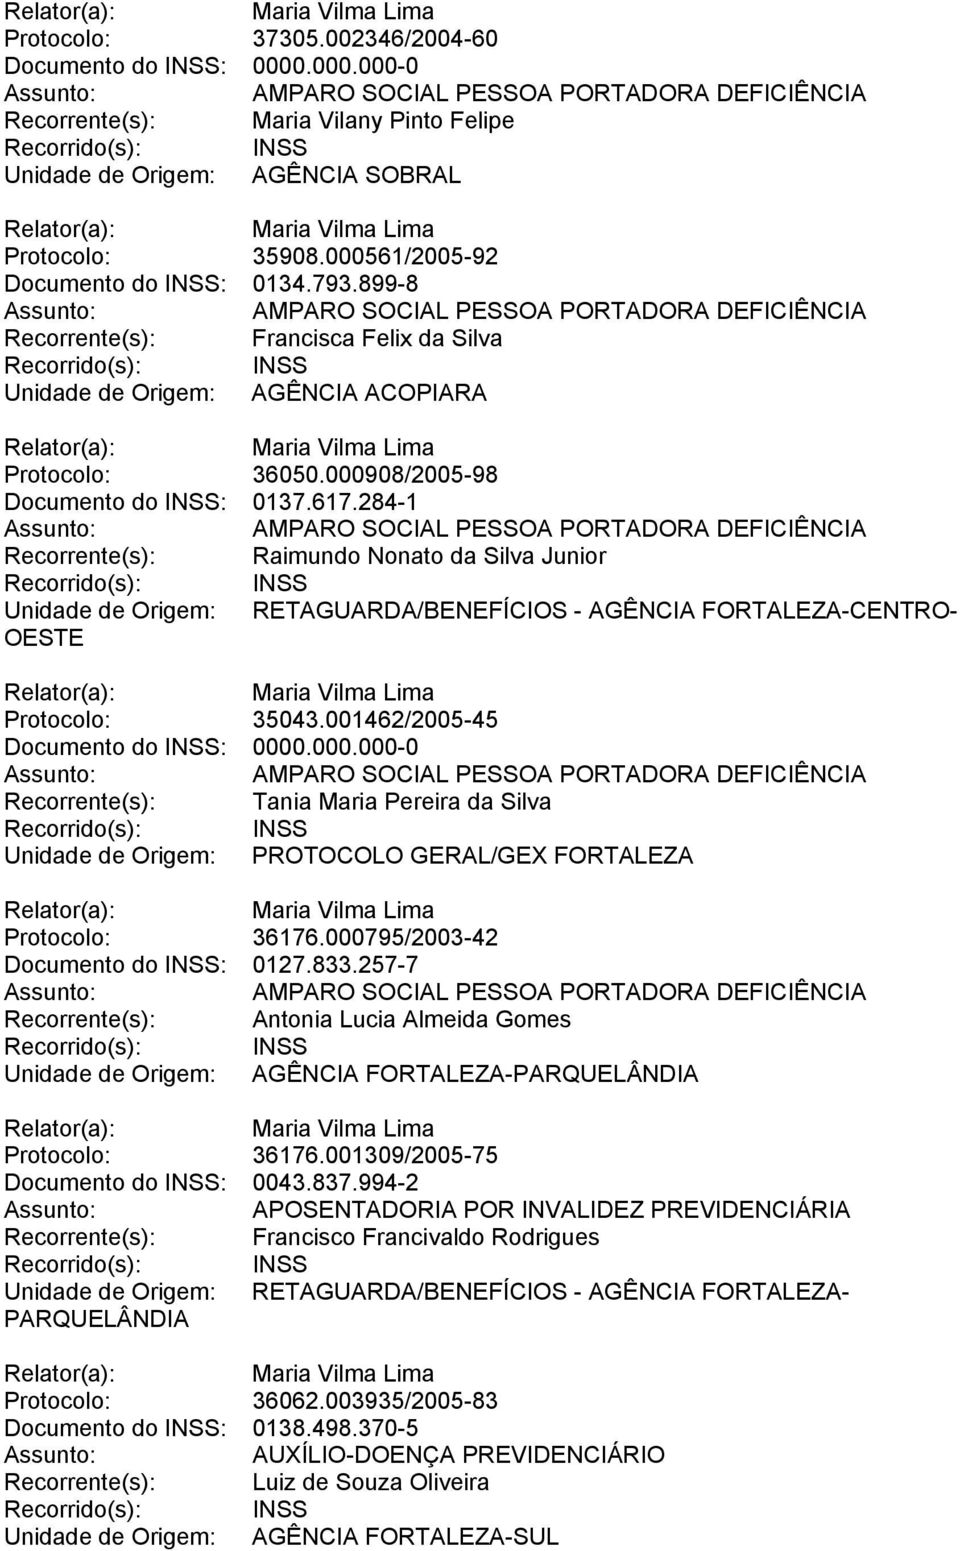 284-1 Recorrente(s): Raimundo Nonato da Silva Junior Unidade de Origem: RETAGUARDA/BENEFÍCIOS - AGÊNCIA FORTALEZA-CENTRO- OESTE Protocolo: 35043.